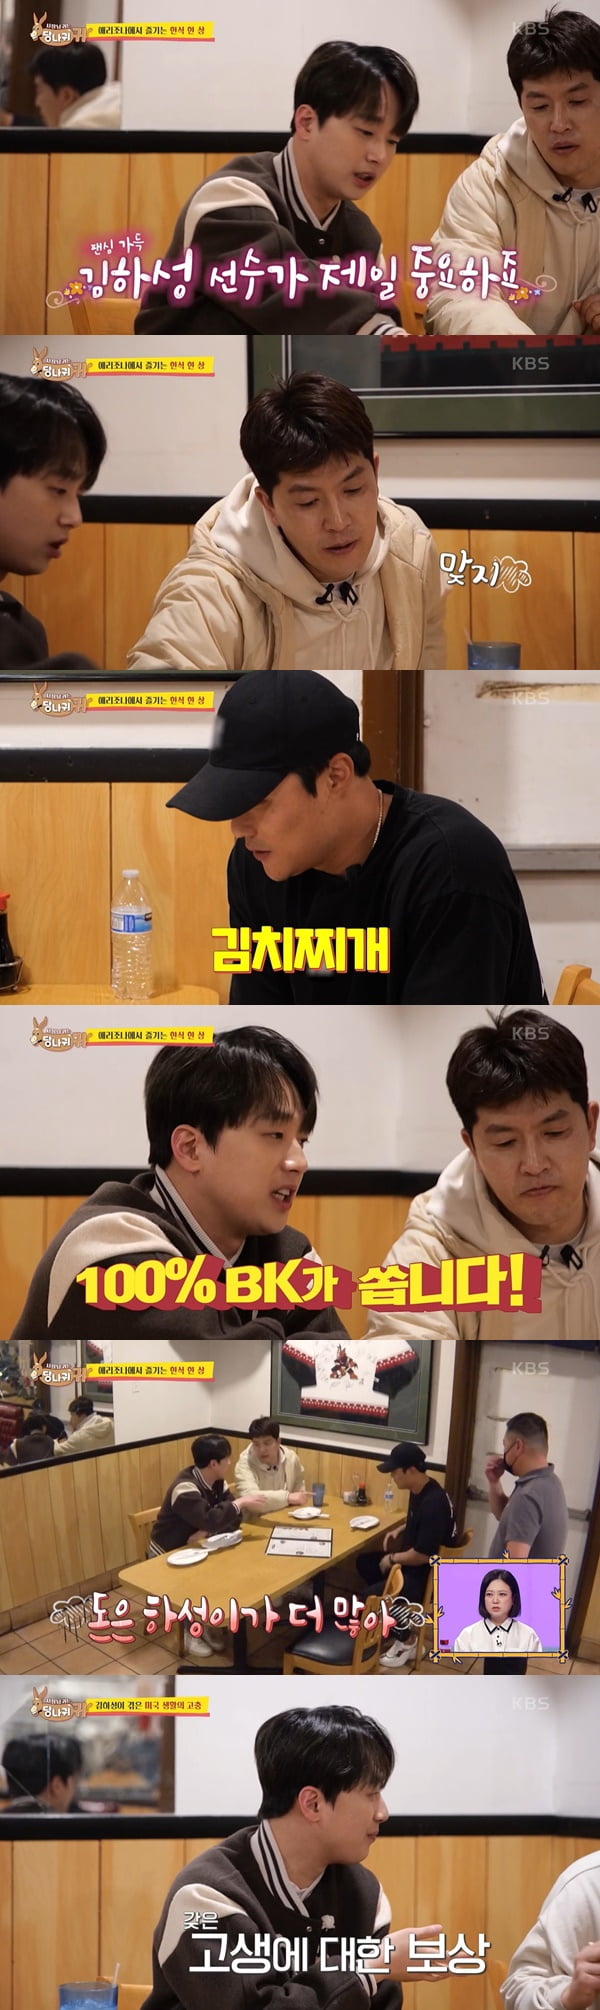 /사진=KBS2 '사장님 귀는 당나귀 귀' 방송 화면 캡처